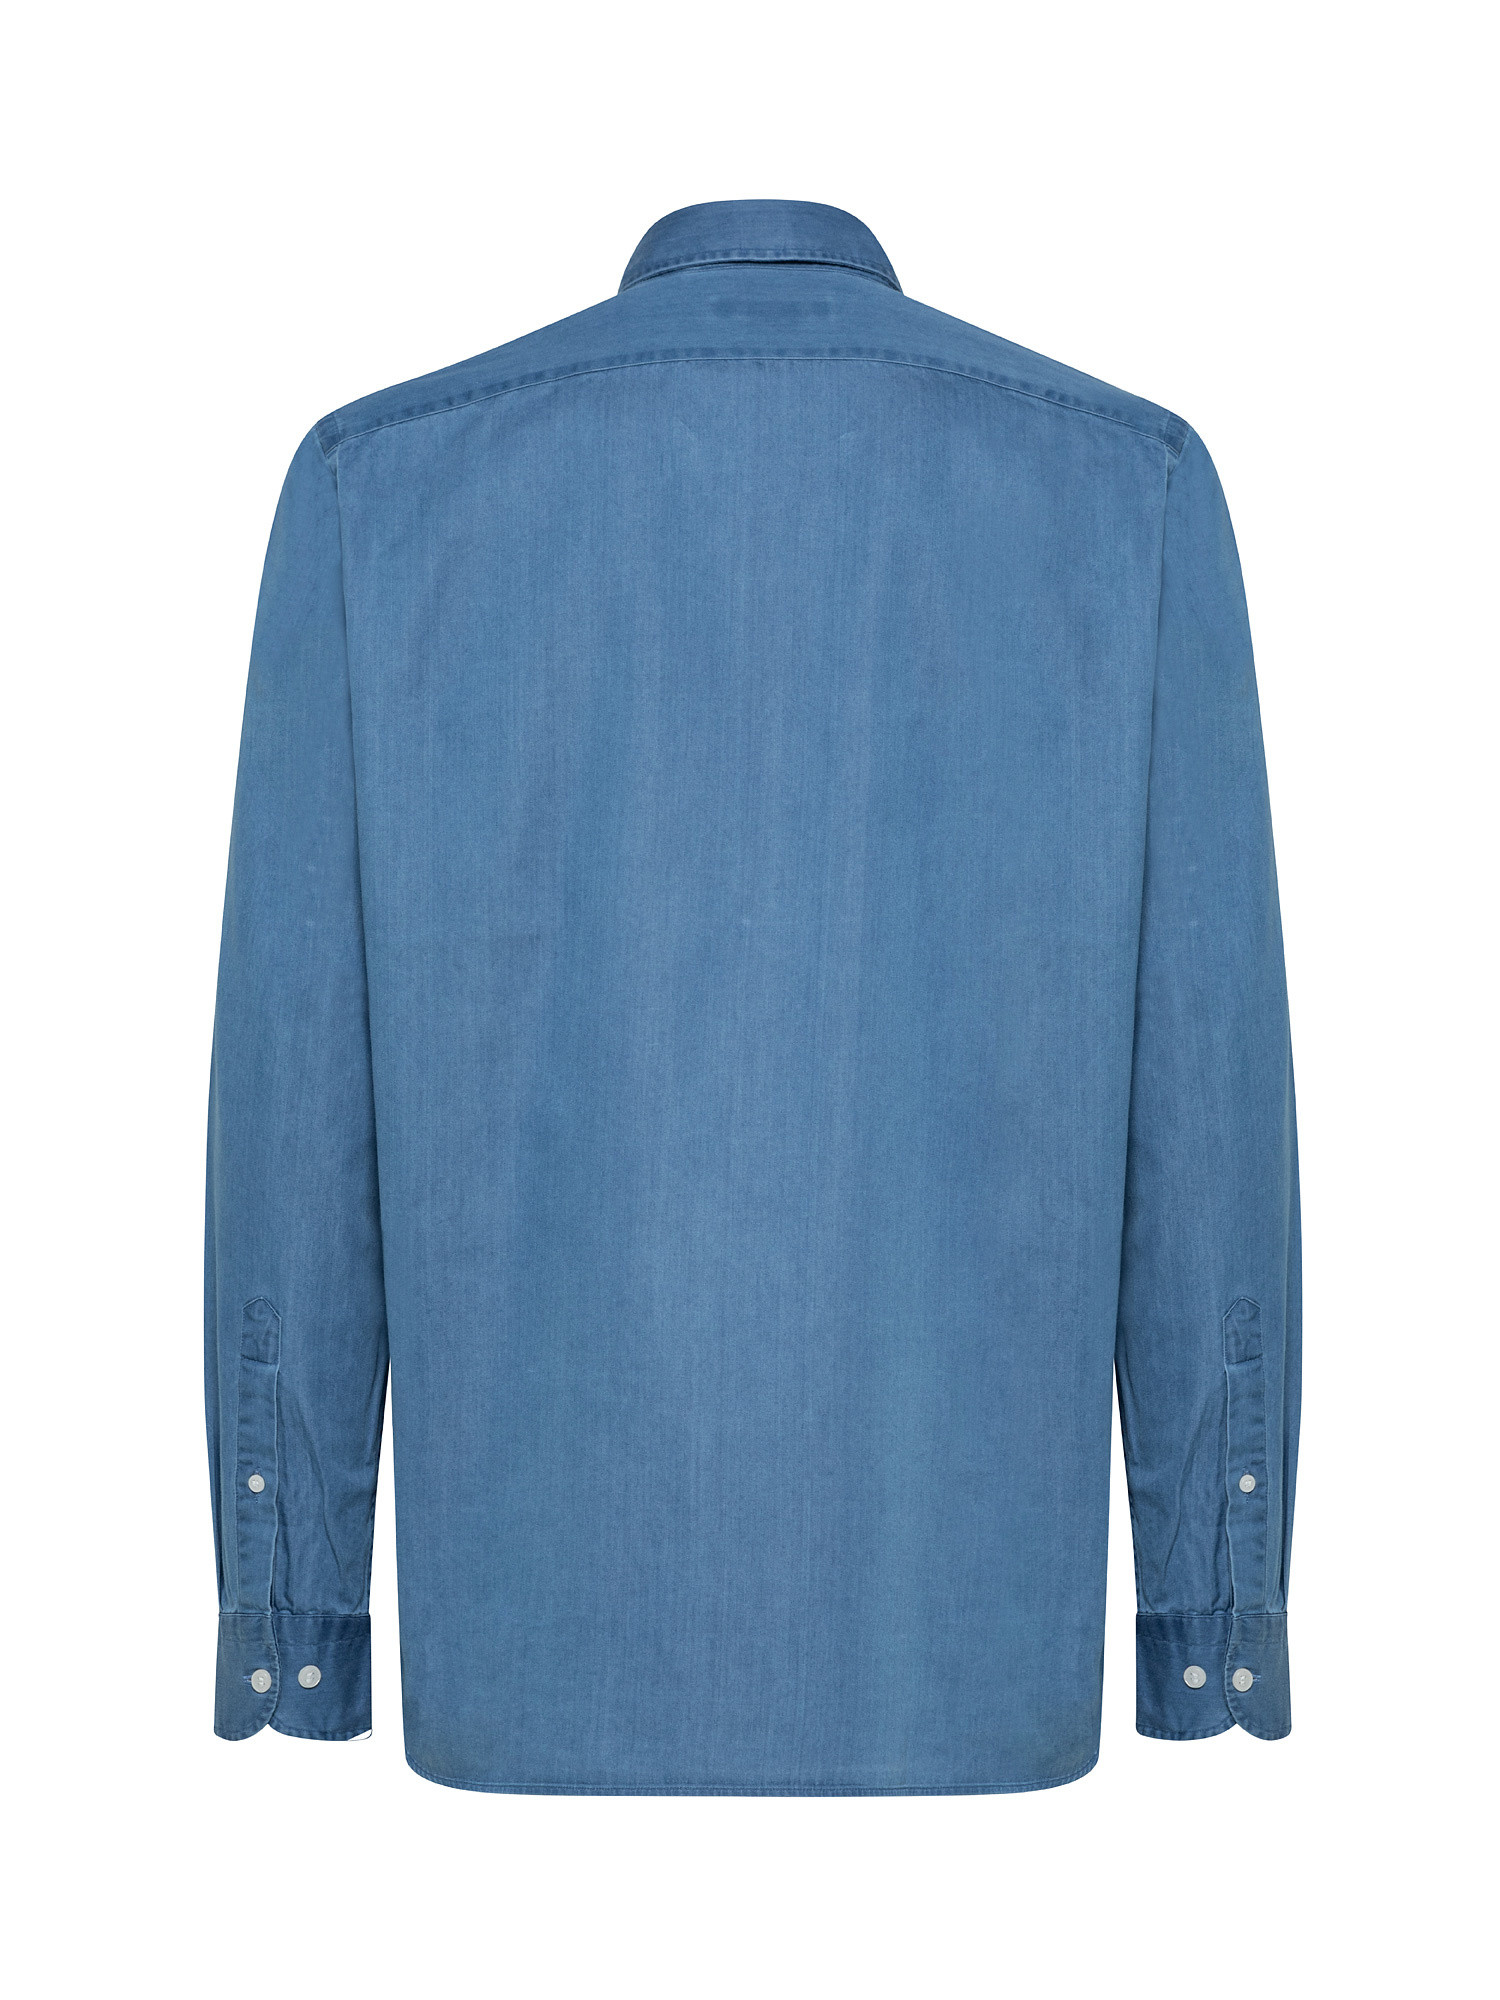 Tailor fit denim shirt, Blue Dark, large image number 1